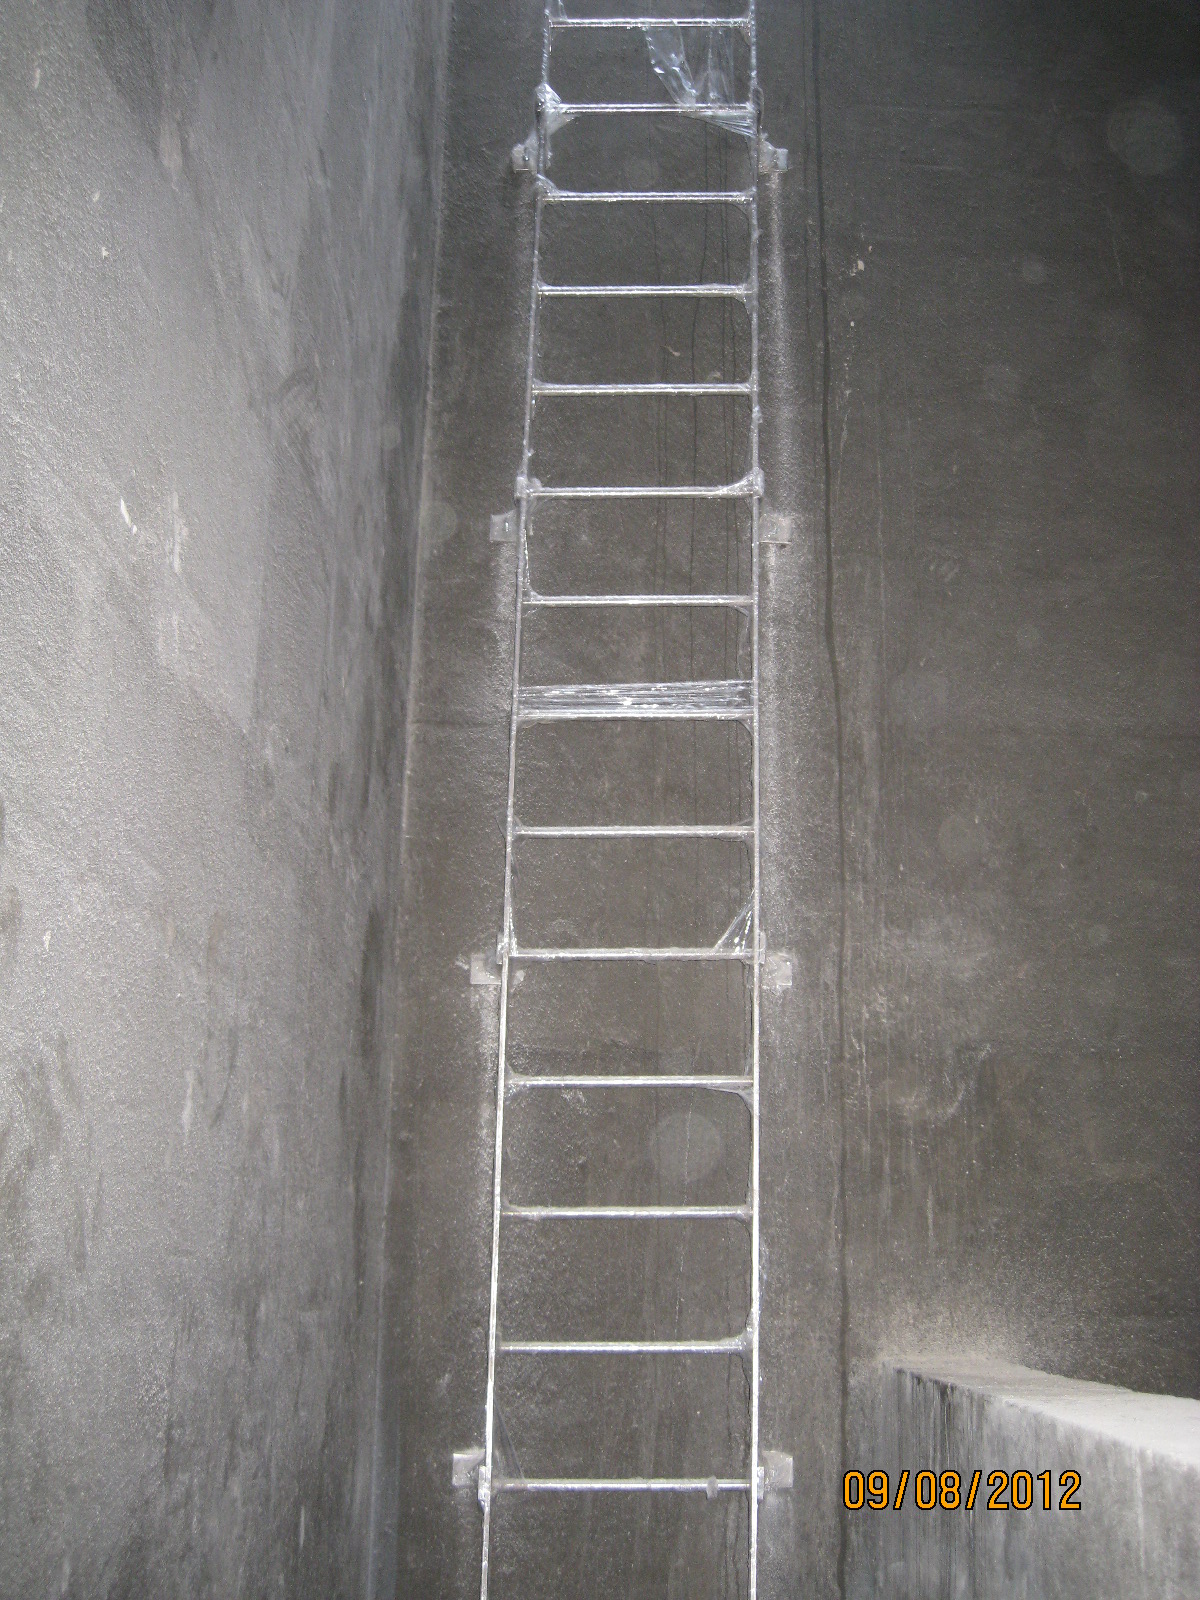 Step runge & ladder